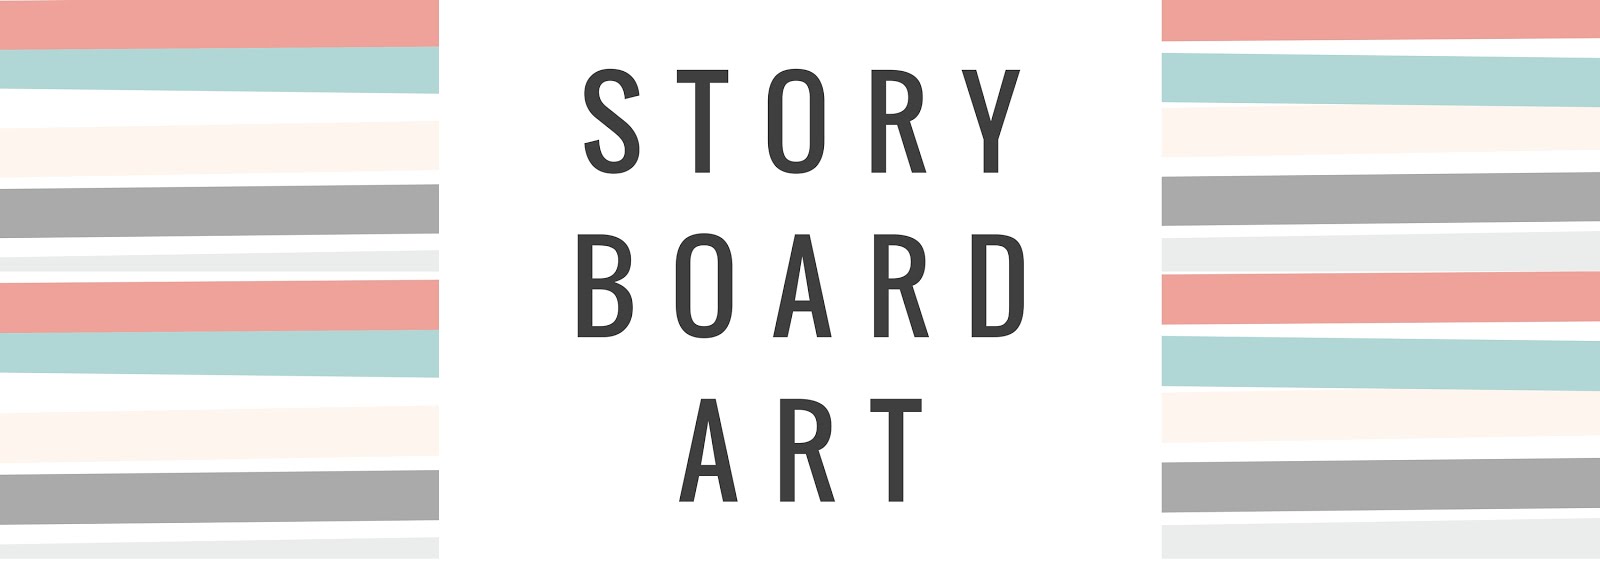 Story-Board-Art